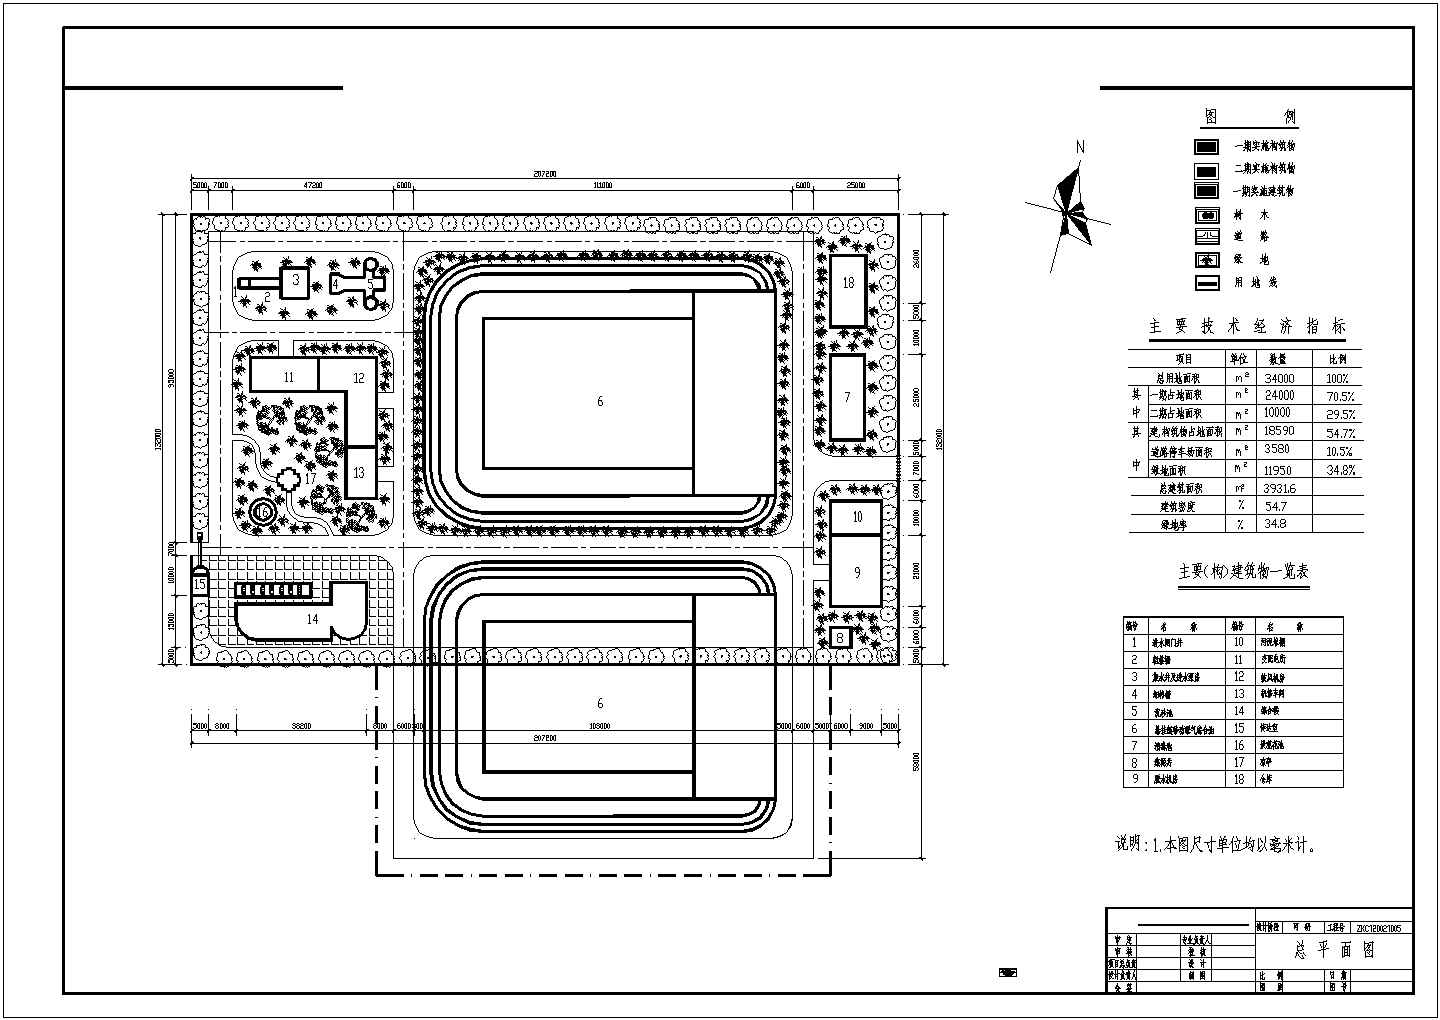 四川某县城市污水处理工程施工设计cad图纸（含污水处理高程图，过路管道平面示意图）